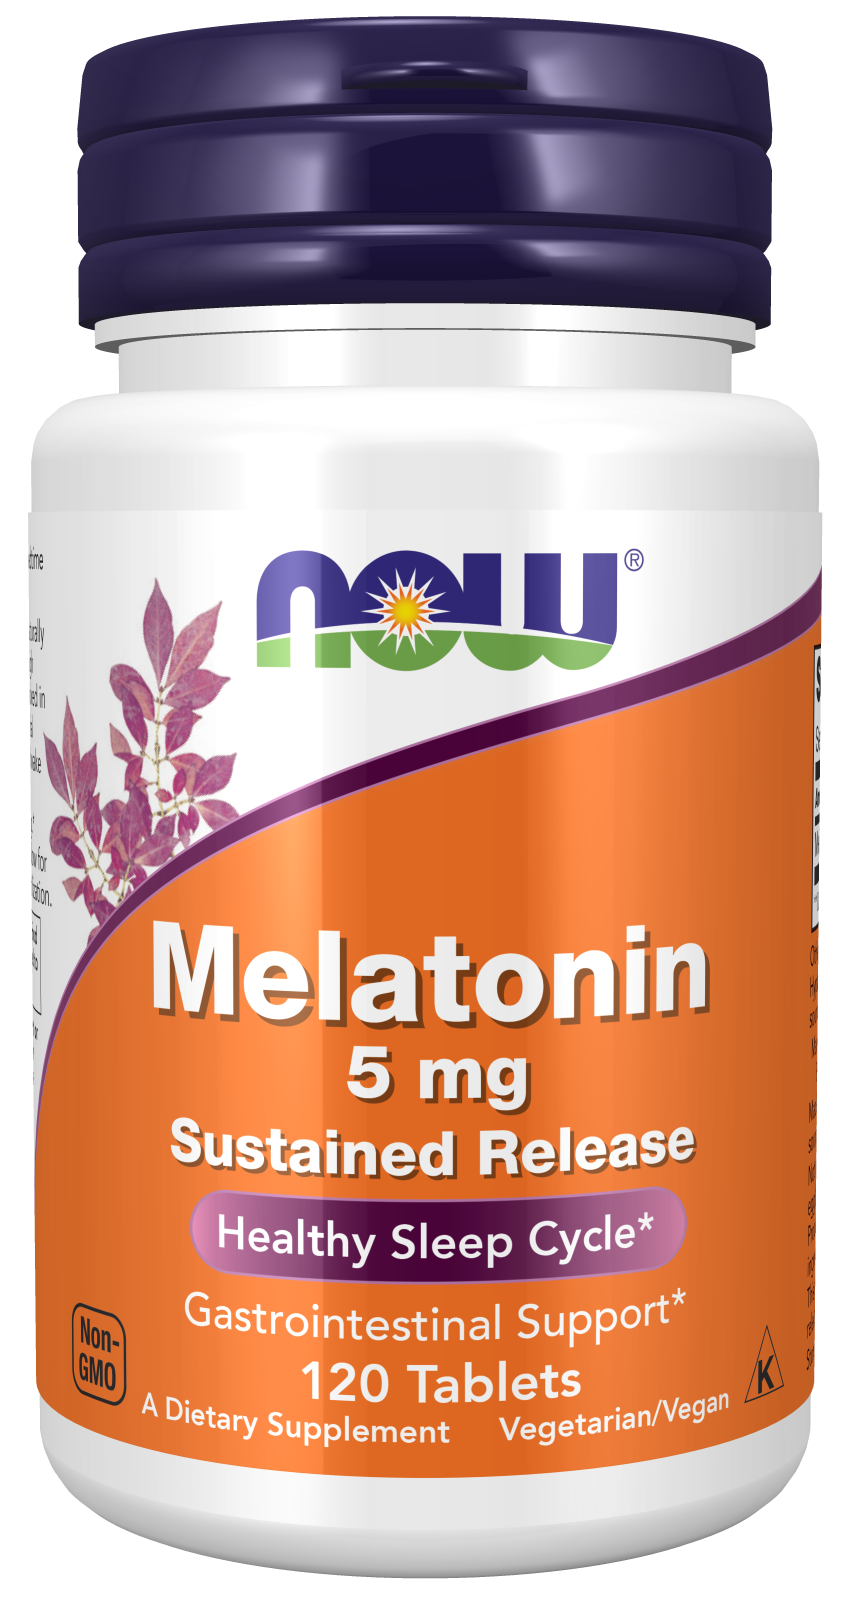 Melatonin 5 mg Sustained Release - 120 Tablets Bottle Front